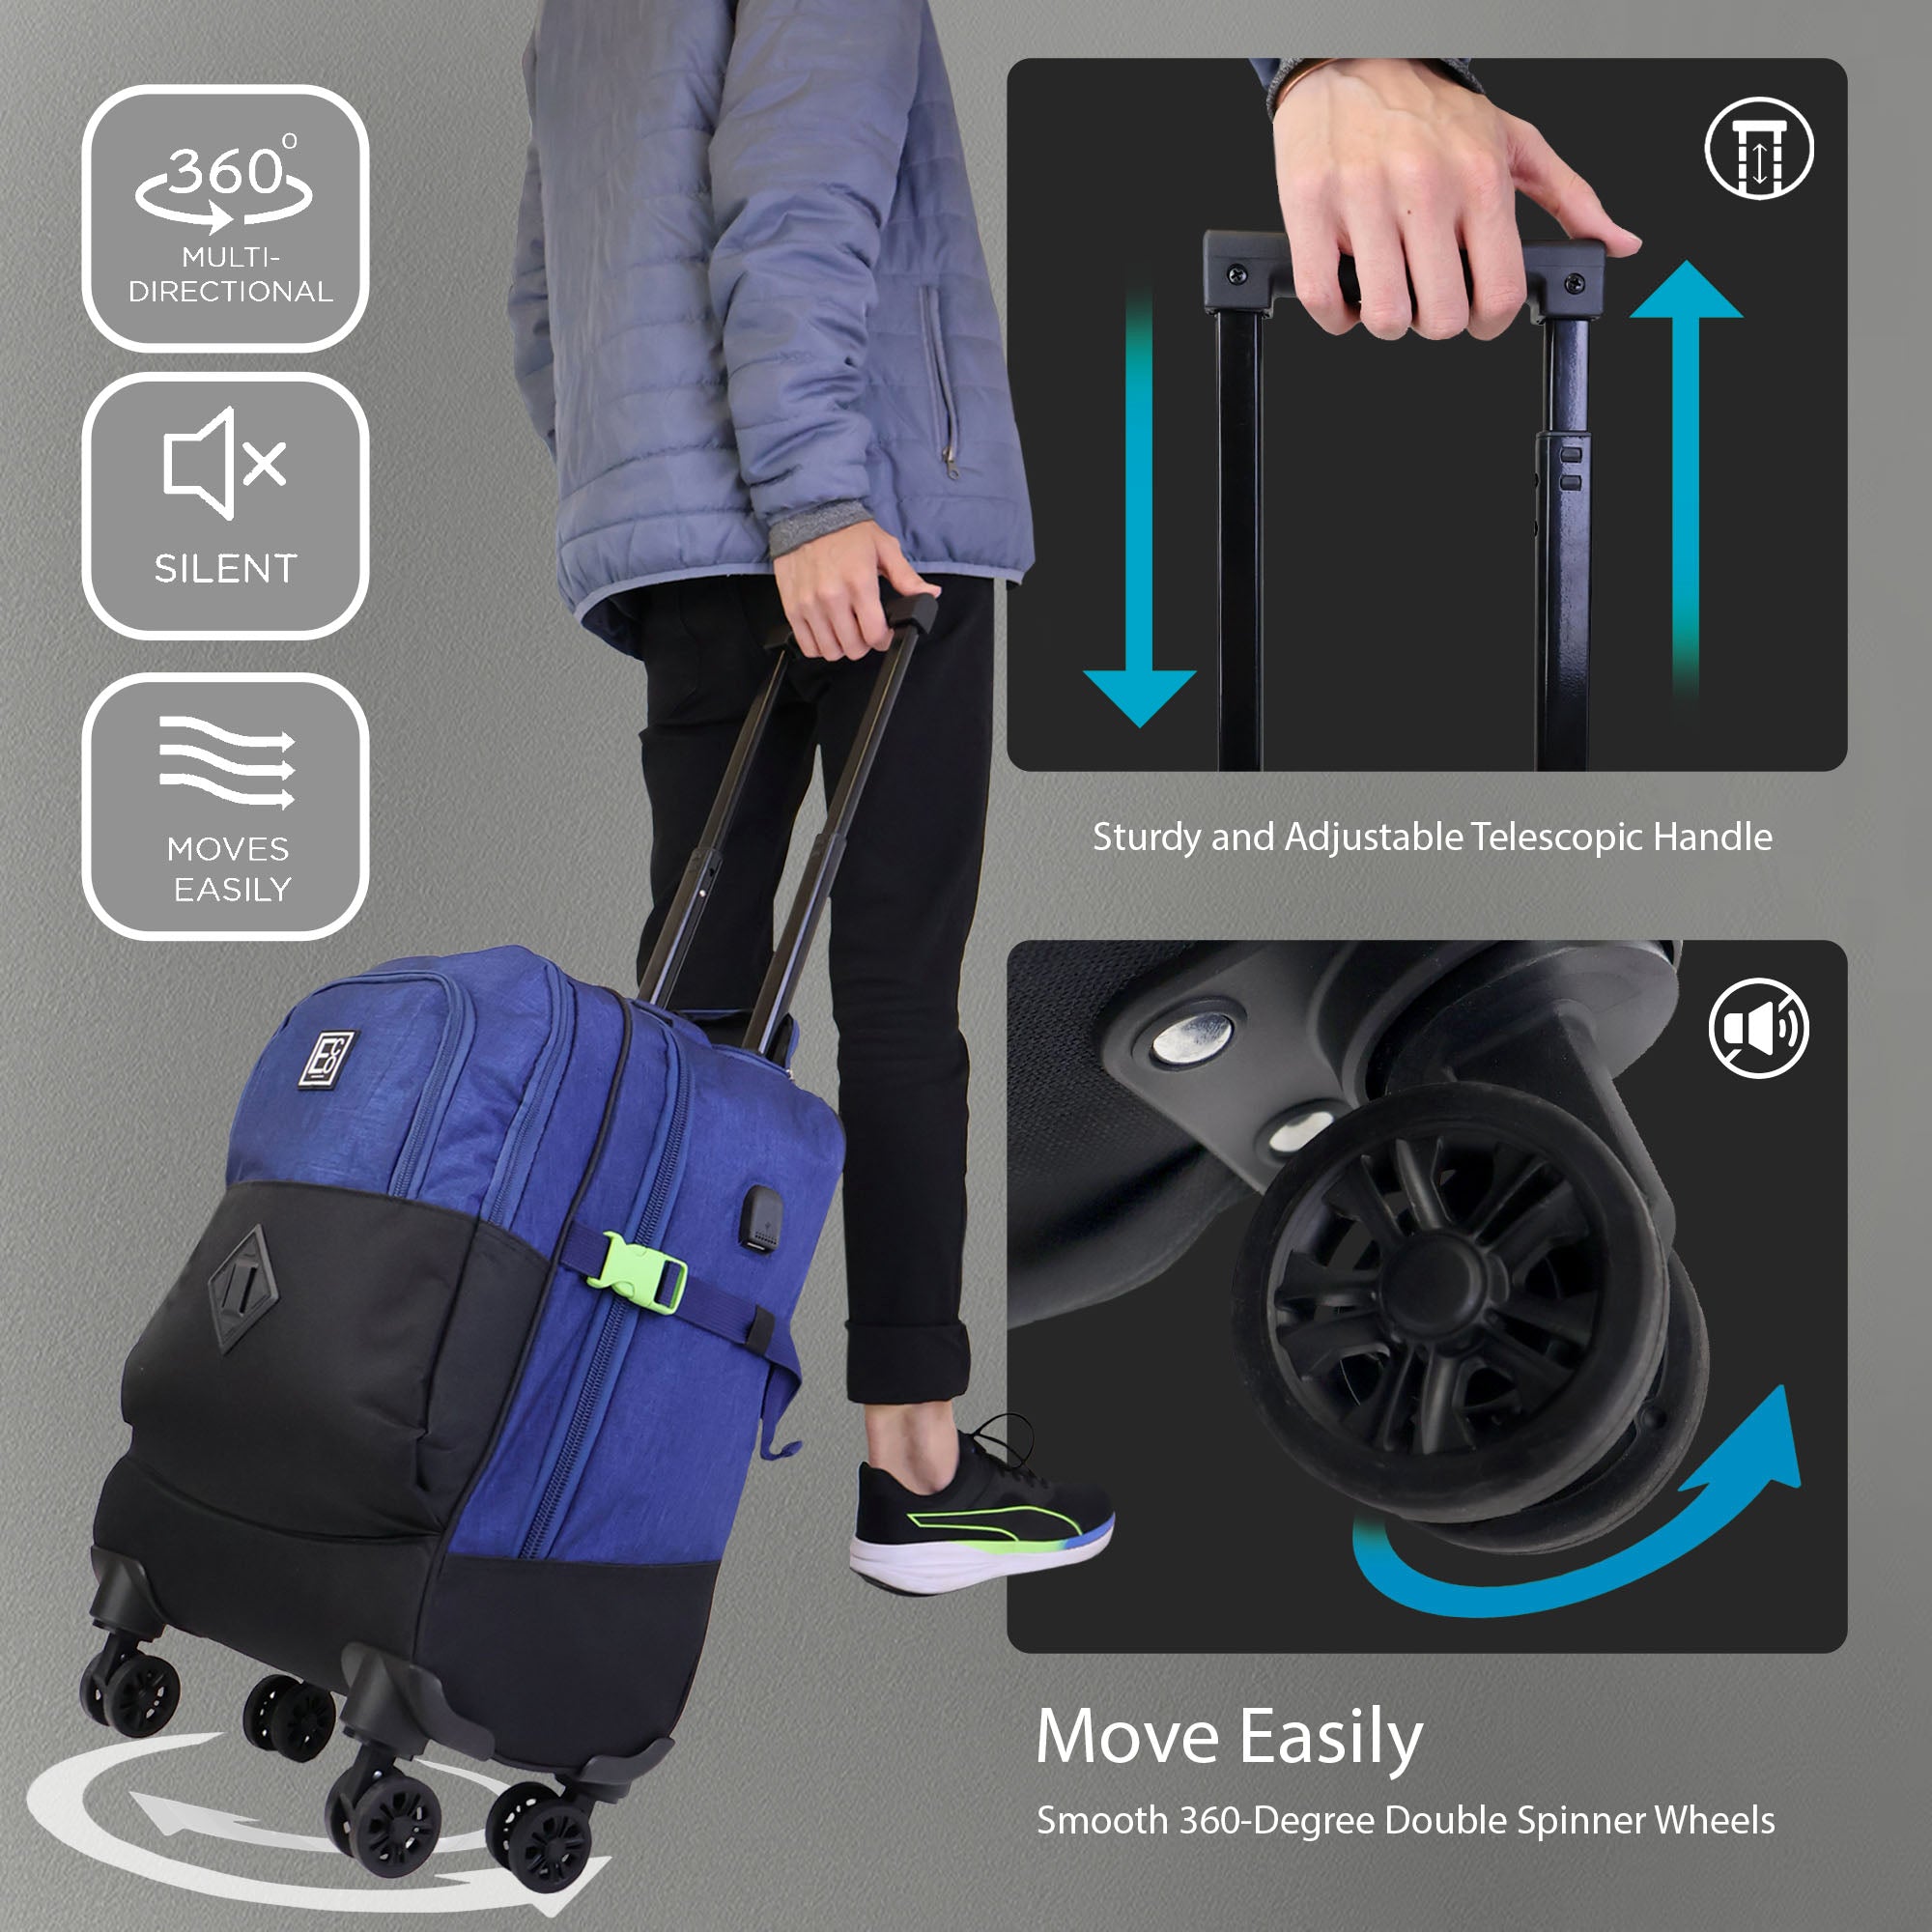 Spinner-Trolley-Rucksack mit Kühltaschenfach und USB-Anschluss